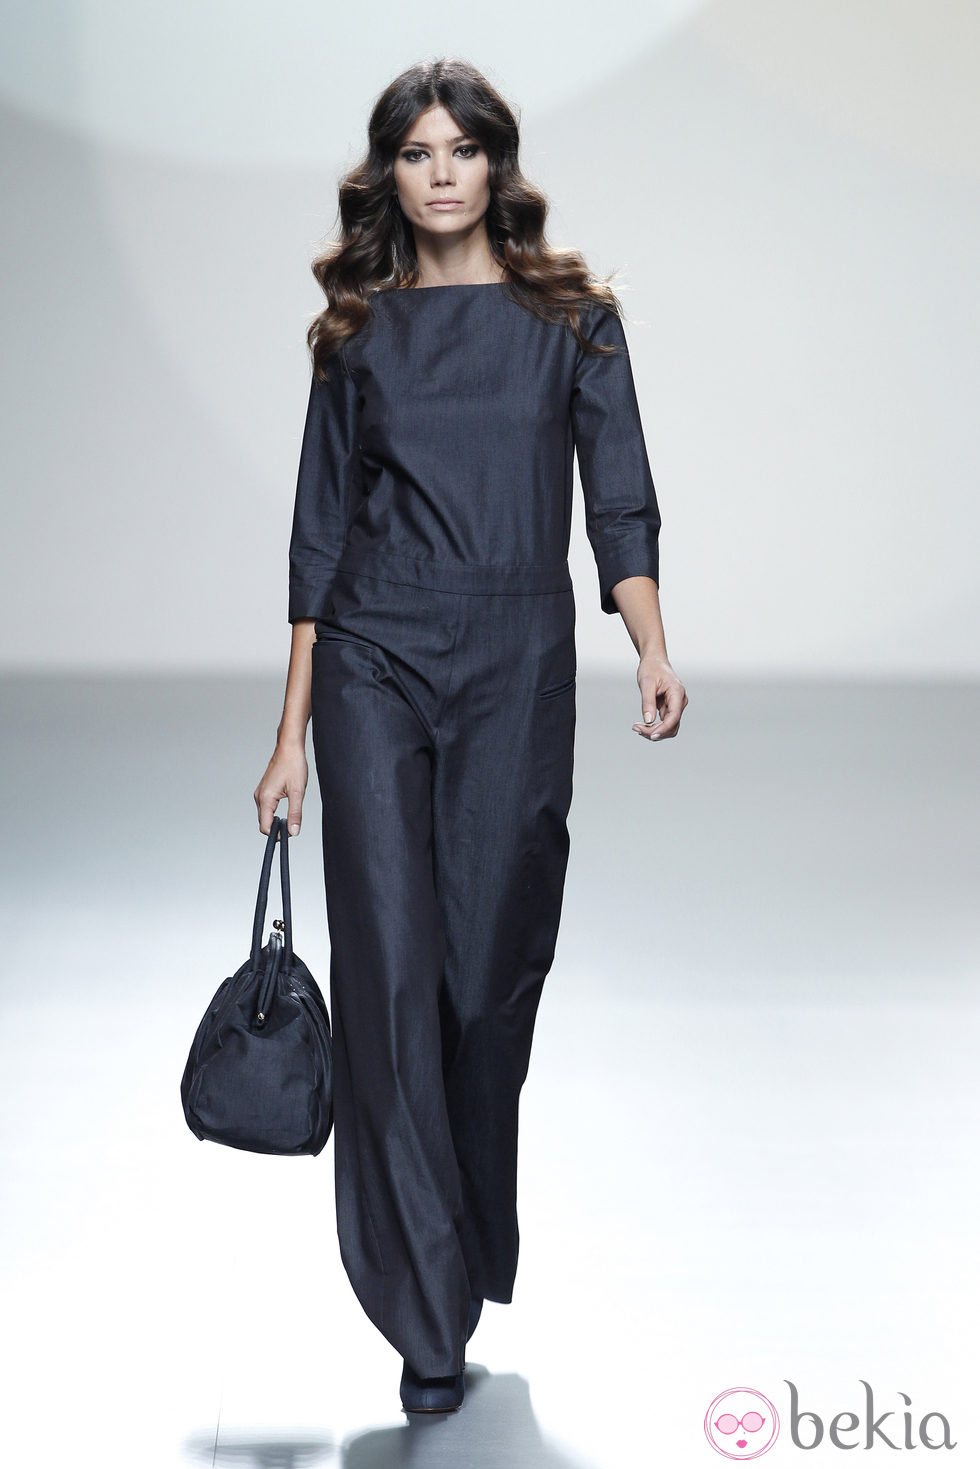 Jumspuit azul de la colección primavera/verano 2014 de Teresa Helbig en Madrid Fashion Week